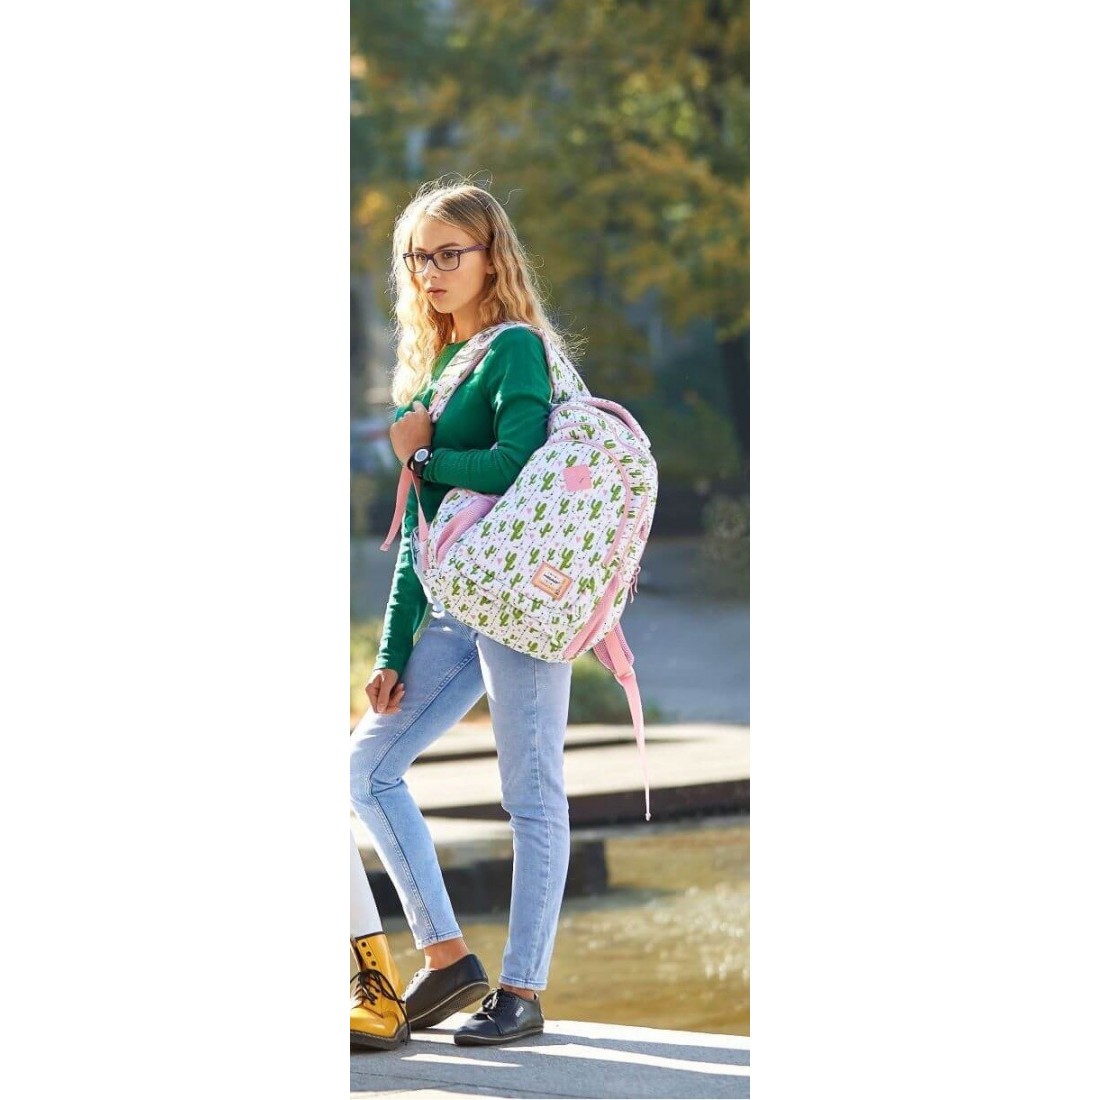 Plecak młodzieżowy dla dziewczyny Head HD-307 C w modne kaktusy - plecak-tornister.pl